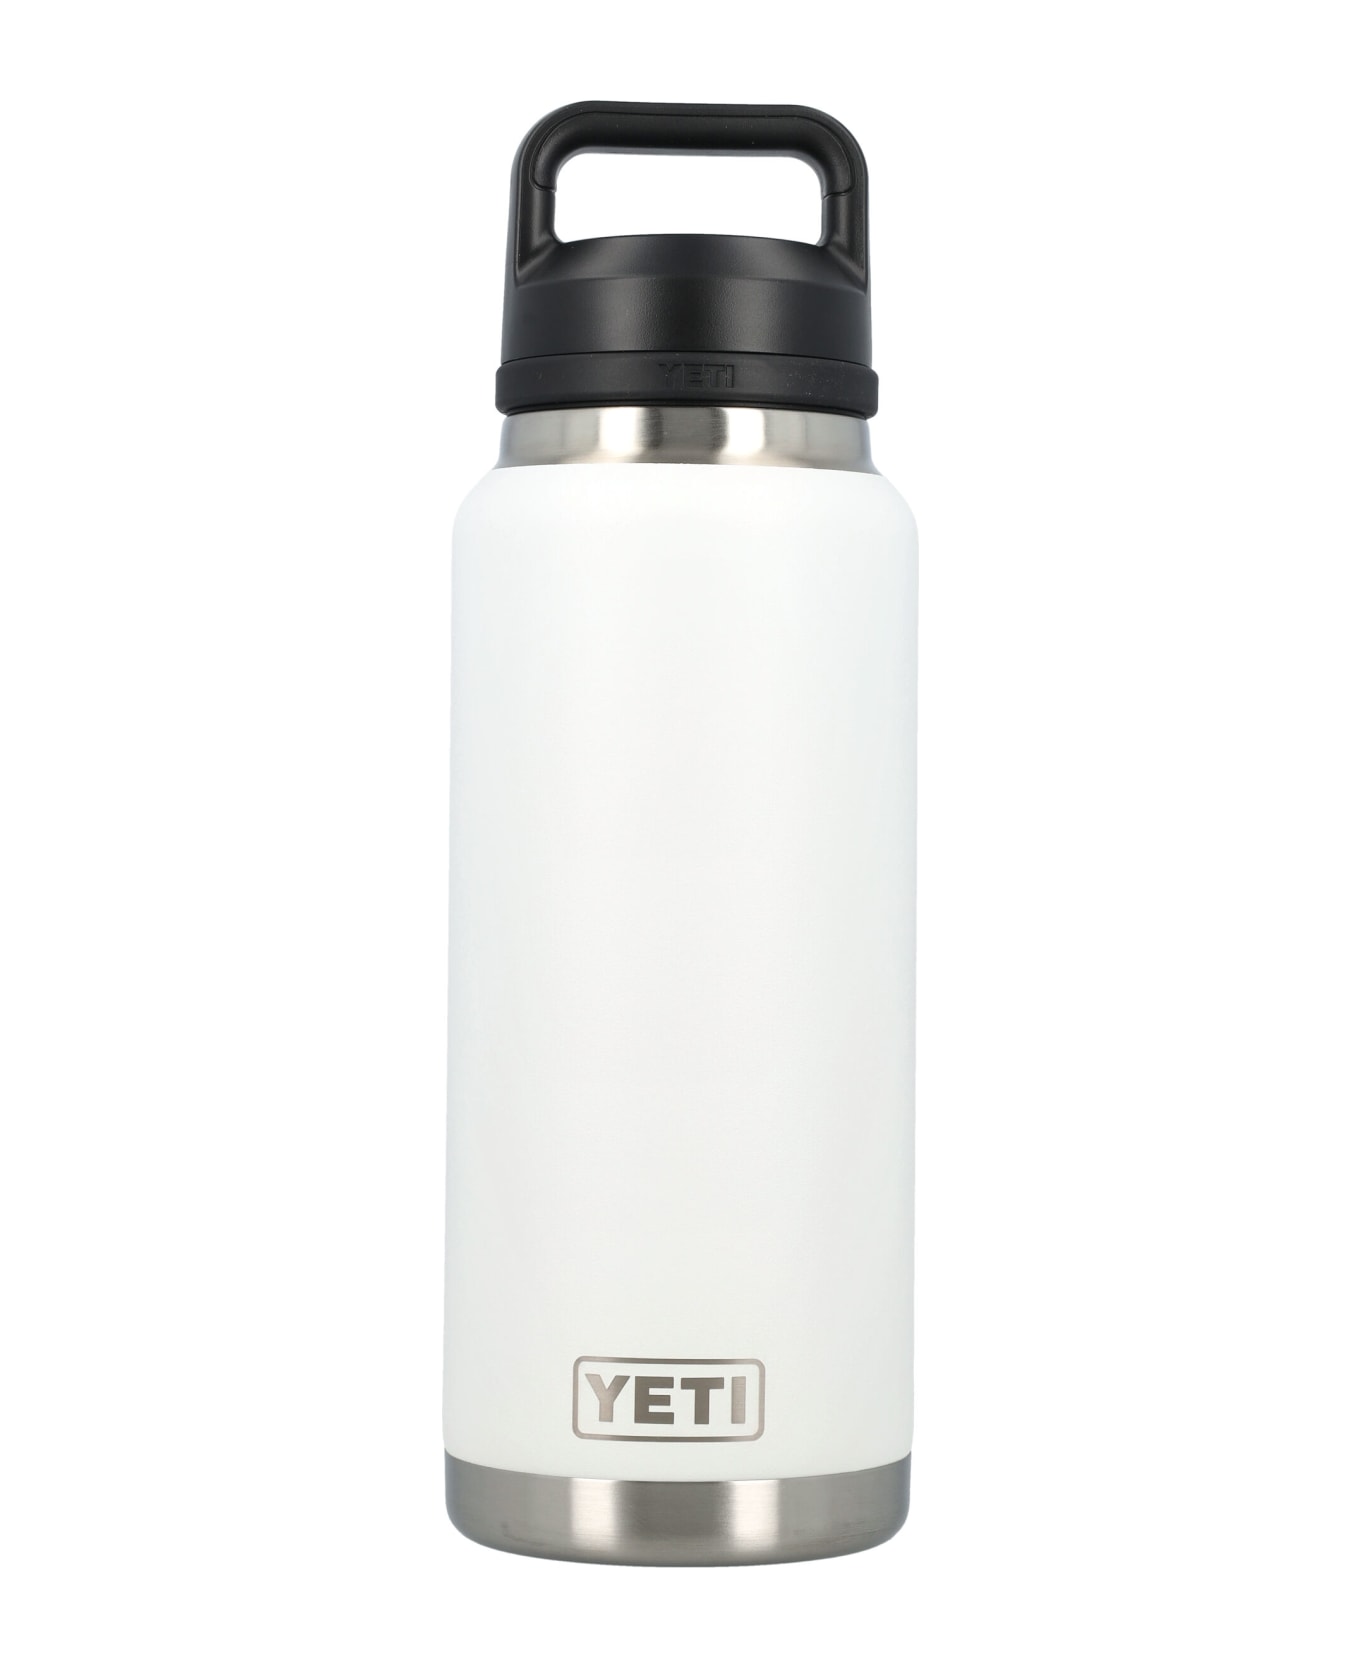 Yeti 36 Oz Water Bottle - WHITE デジタルアクセサリー